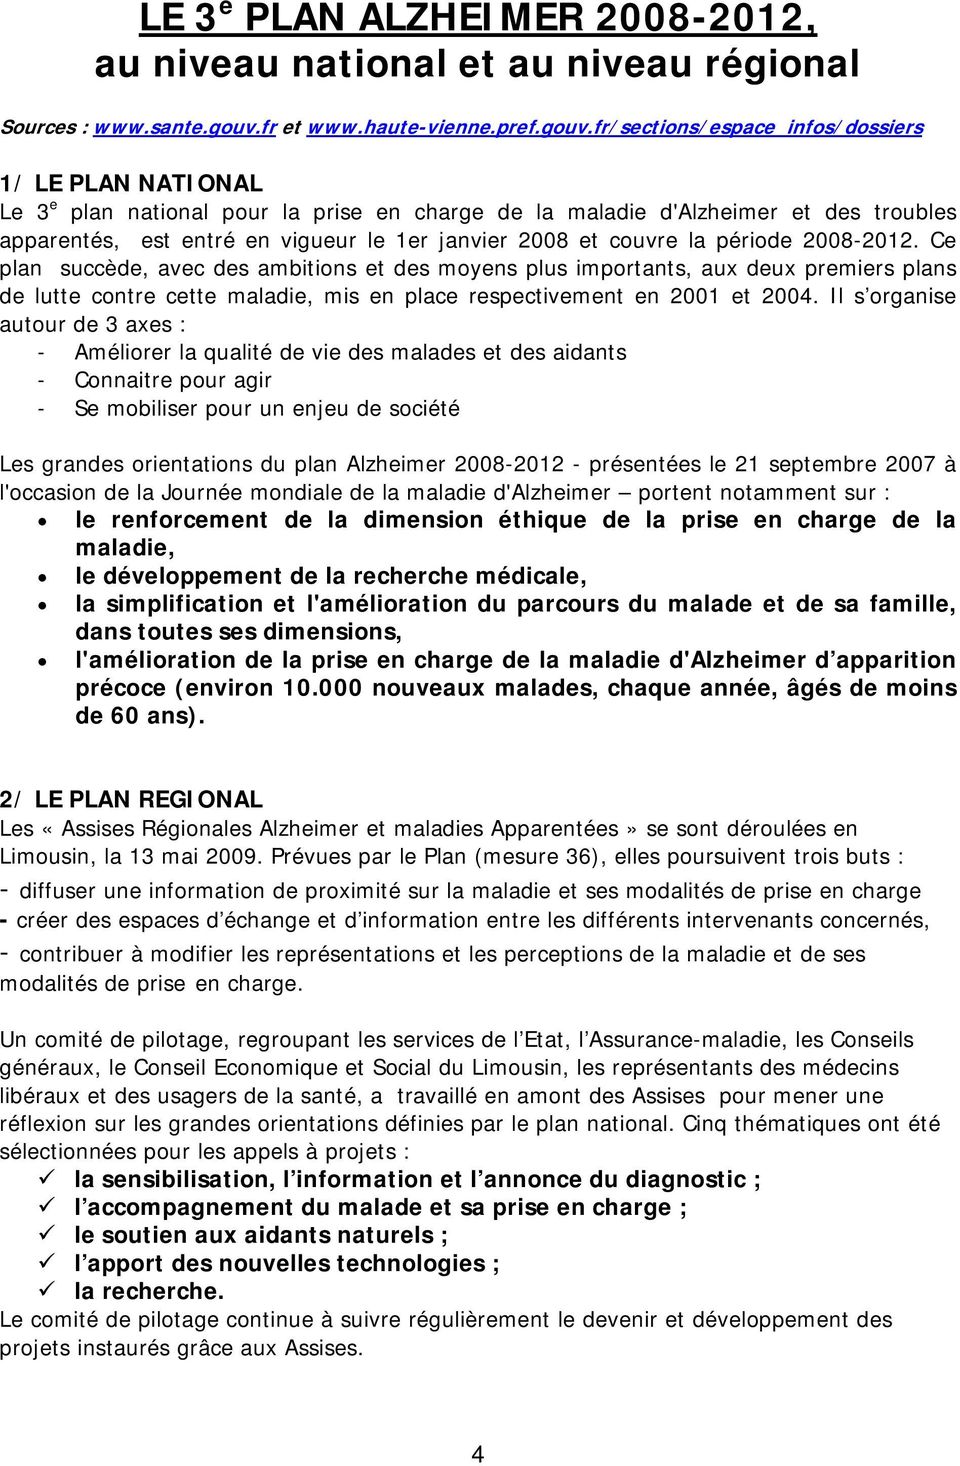 fr/sections/espace_infos/dossiers 1/ LE PLAN NATIONAL Le 3 e plan national pour la prise en charge de la maladie d'alzheimer et des troubles apparentés, est entré en vigueur le 1er janvier 2008 et